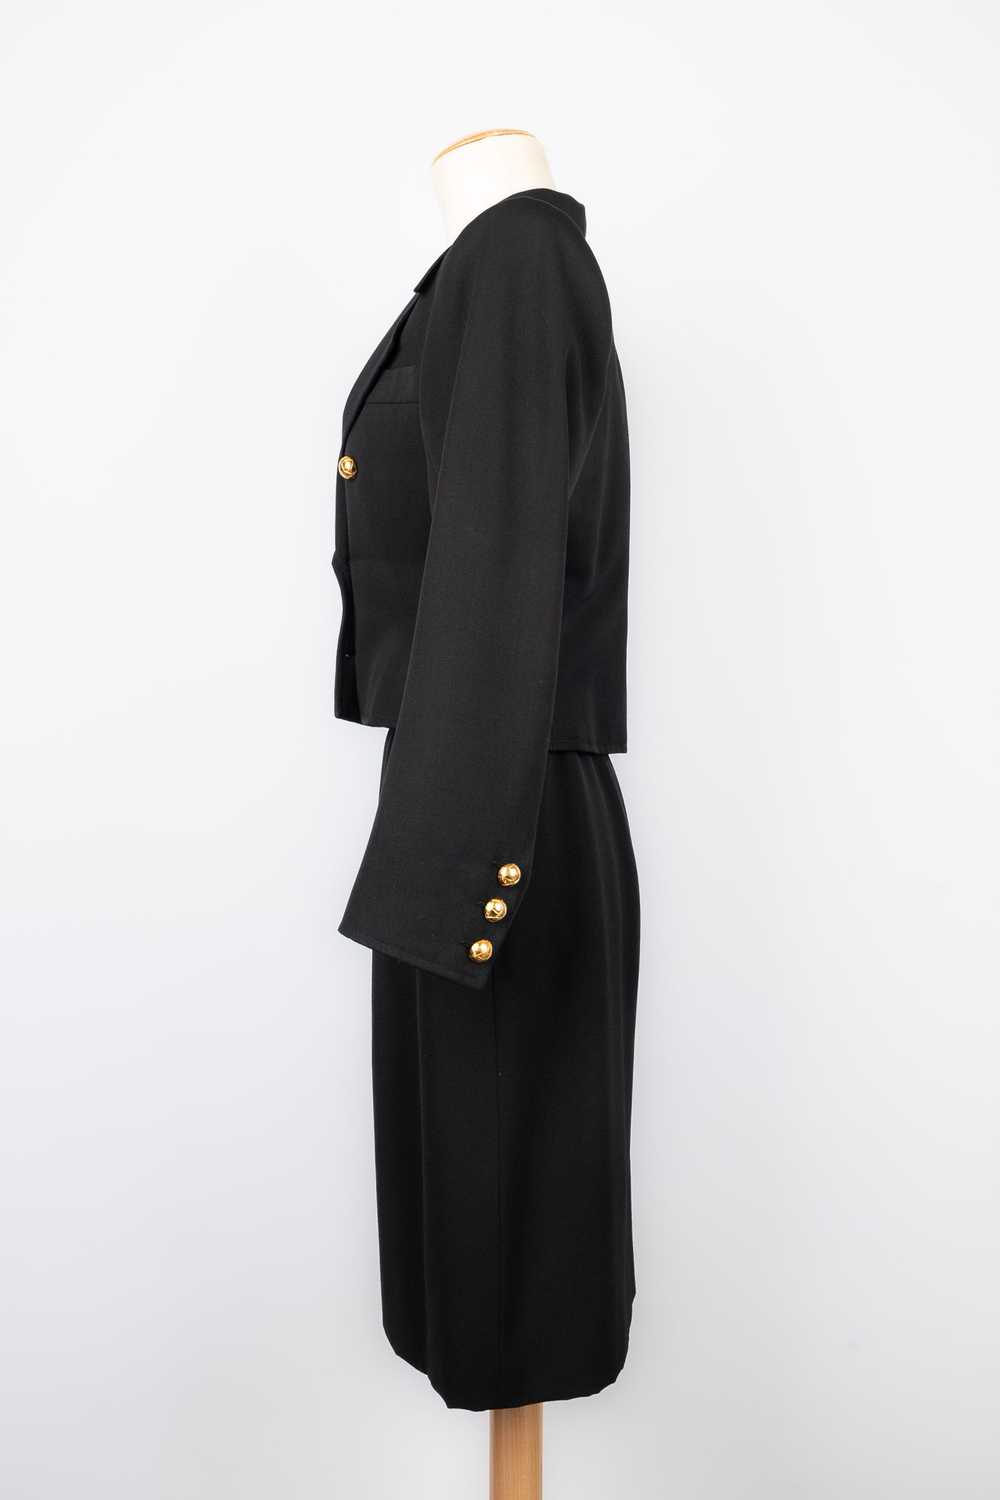 Yves saint Laurent suit Haute Couture - image 2